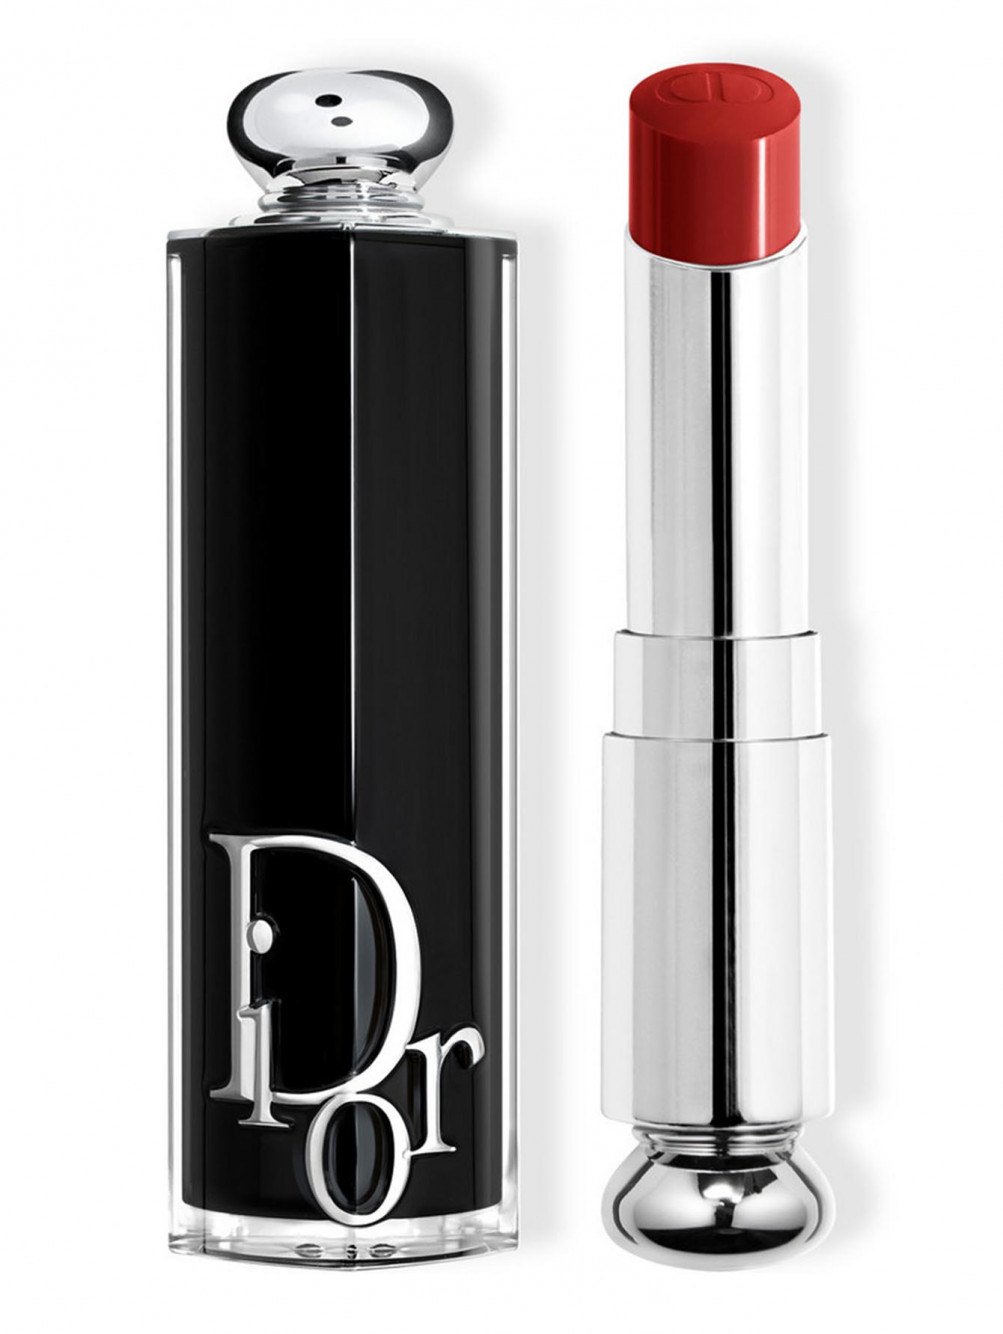 Помада для губ Dior Addict, Силуэт 972, 3,2 г - Общий вид